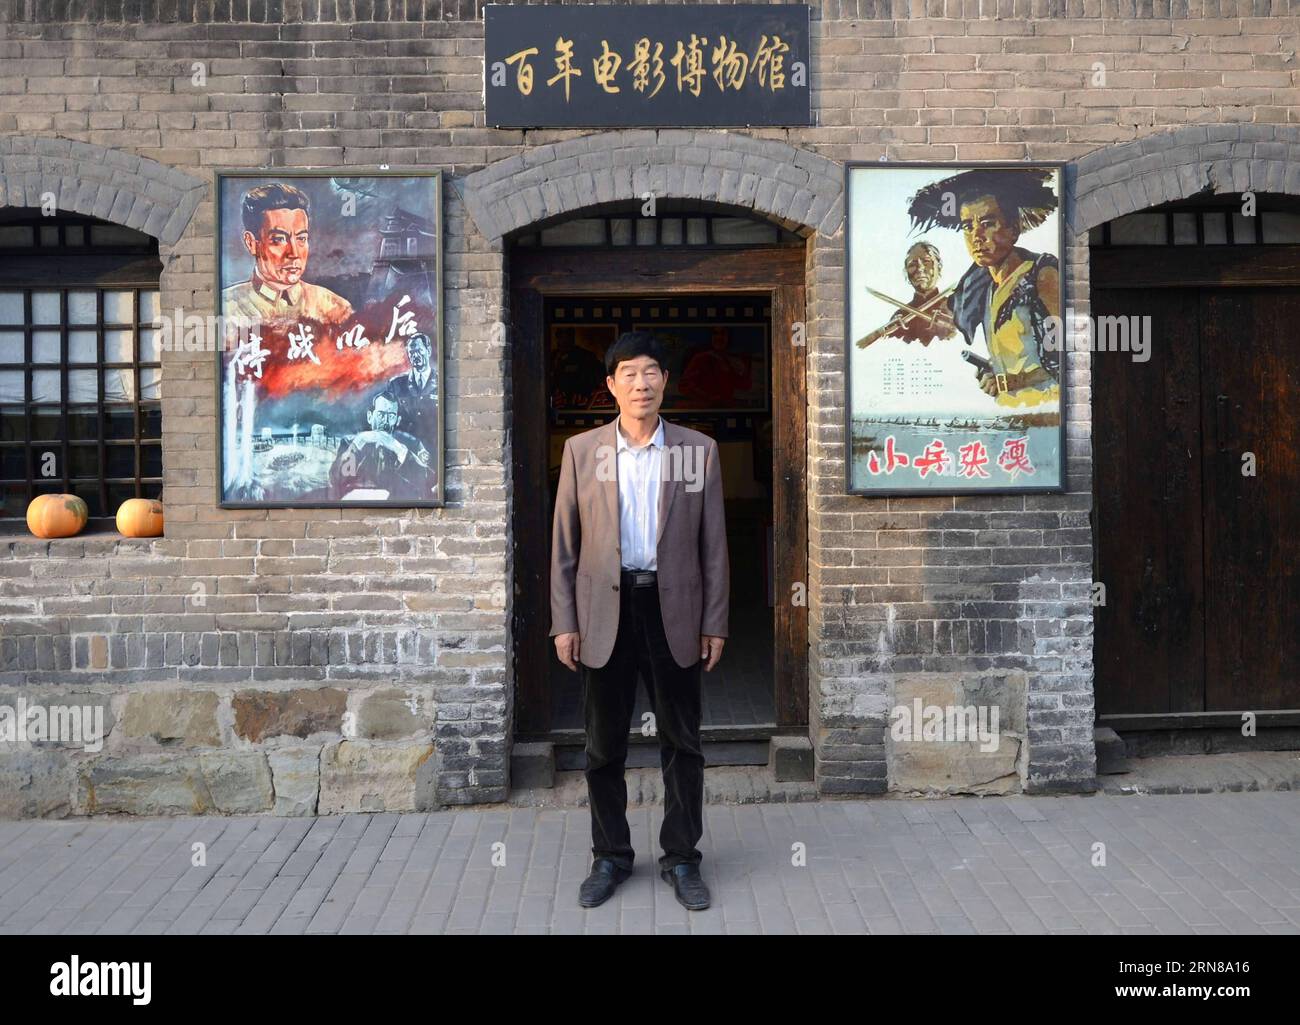 SHIJIAZHUANG, 13 ottobre 2015 - Wei Shaoxian posa per una foto davanti al suo museo del cinema nel villaggio di Siliugu della contea di Handan, nella provincia di Hebei, nella Cina settentrionale, 13 ottobre 2015. Cinephile Wei Shaoxian ha raccolto più di 20.000 articoli sul cinema, come filmstrip, poster e dischi, dal 2004 e ha fondato il suo museo privato del cinema nel suo villaggio nel 2015. ) (Zkr) CHINA-SHIJIAZHUANG-FILM MUSEUM(CN) WangxXiao PUBLICATIONxNOTxINxCHN Shijiazhuang 13 ottobre 2015 Wei posa per una foto di fronte al suo Museo cinematografico nel villaggio della contea di Handan nella provincia di Hebei della Cina settentrionale 13 ottobre 2015 Wei ne ha raccolti più di 2 Foto Stock